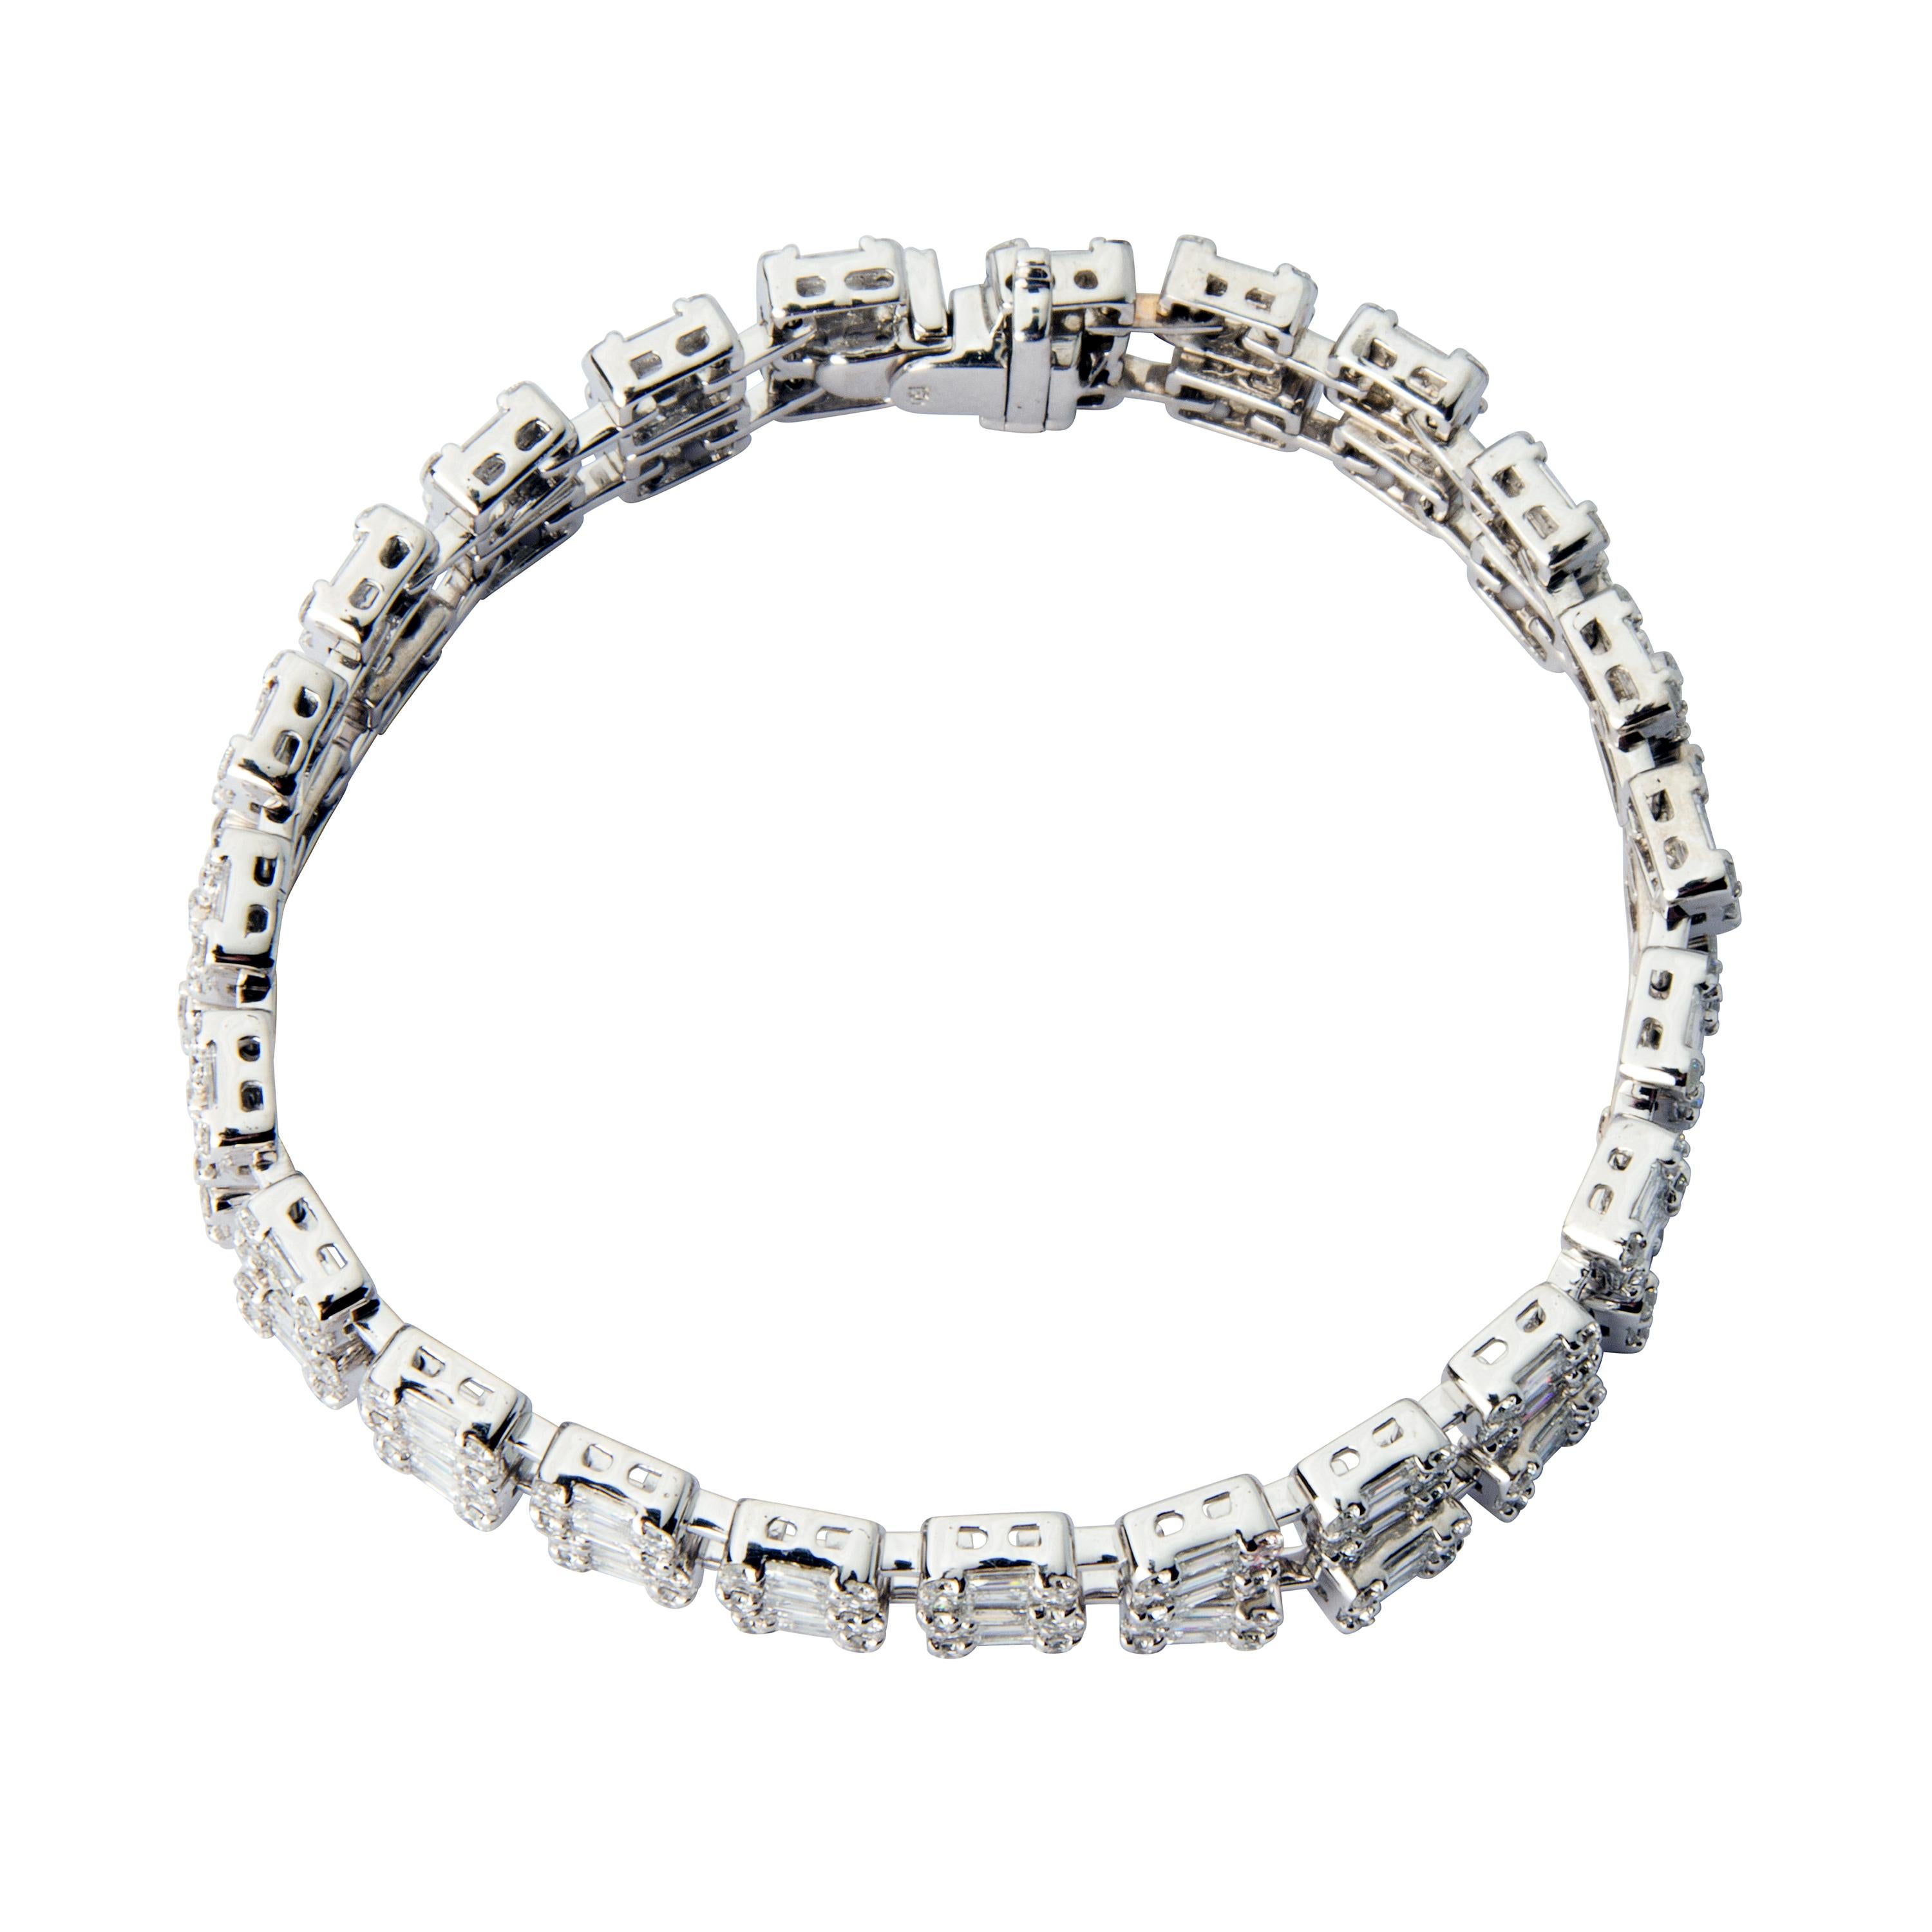 18 karat white gold double row diamond bracelet featuring 414 diamonds totalling 9.82ct.